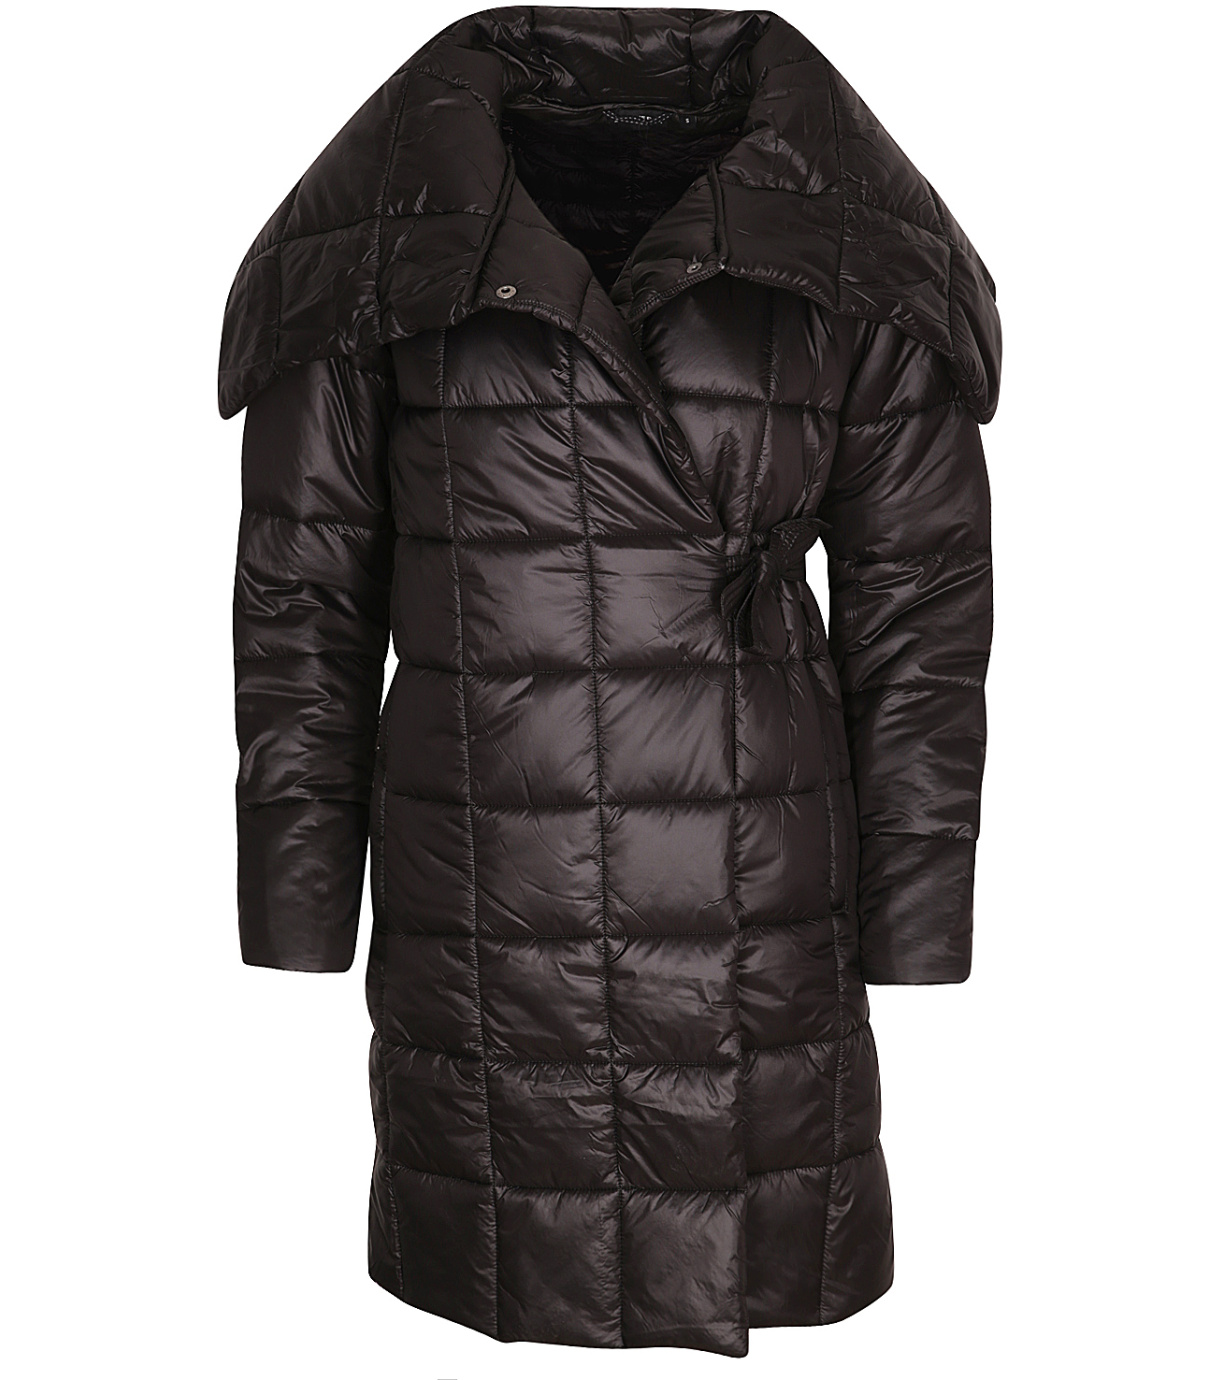 Dámský ultralehký zimní kabát IKMA ALPINE PRO černá